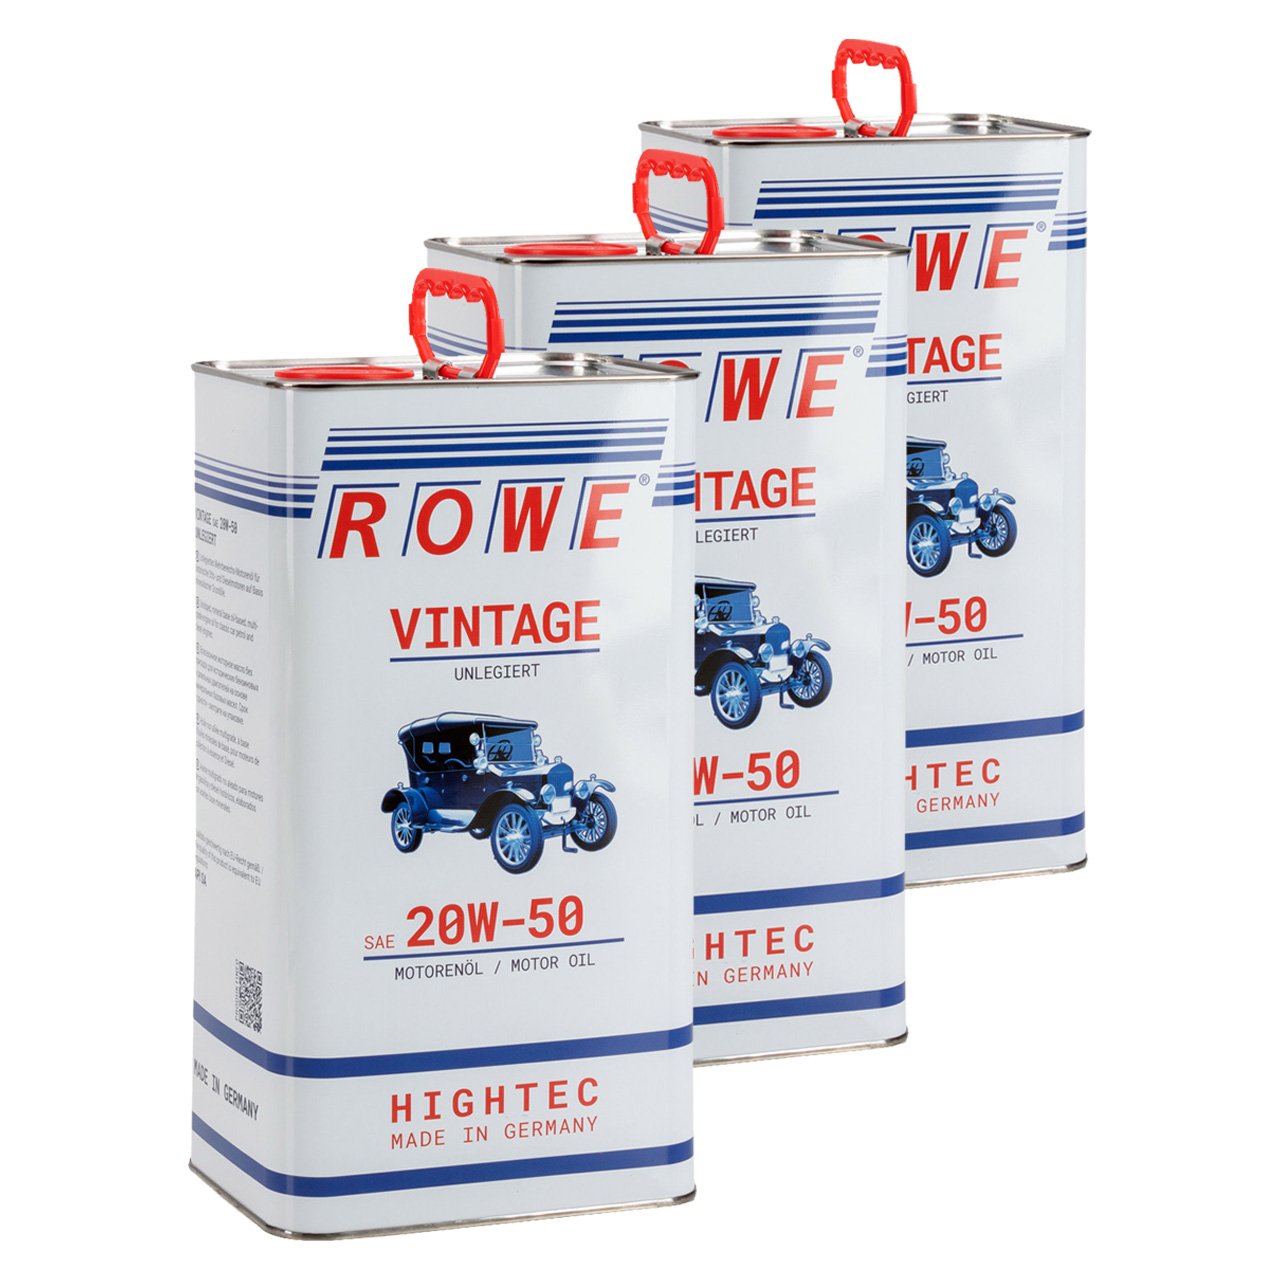 15 Liter ROWE Motoröl Öl VINTAGE Unlegiert SAE 20W50 Oldtimer Mehrbereichs-Öl